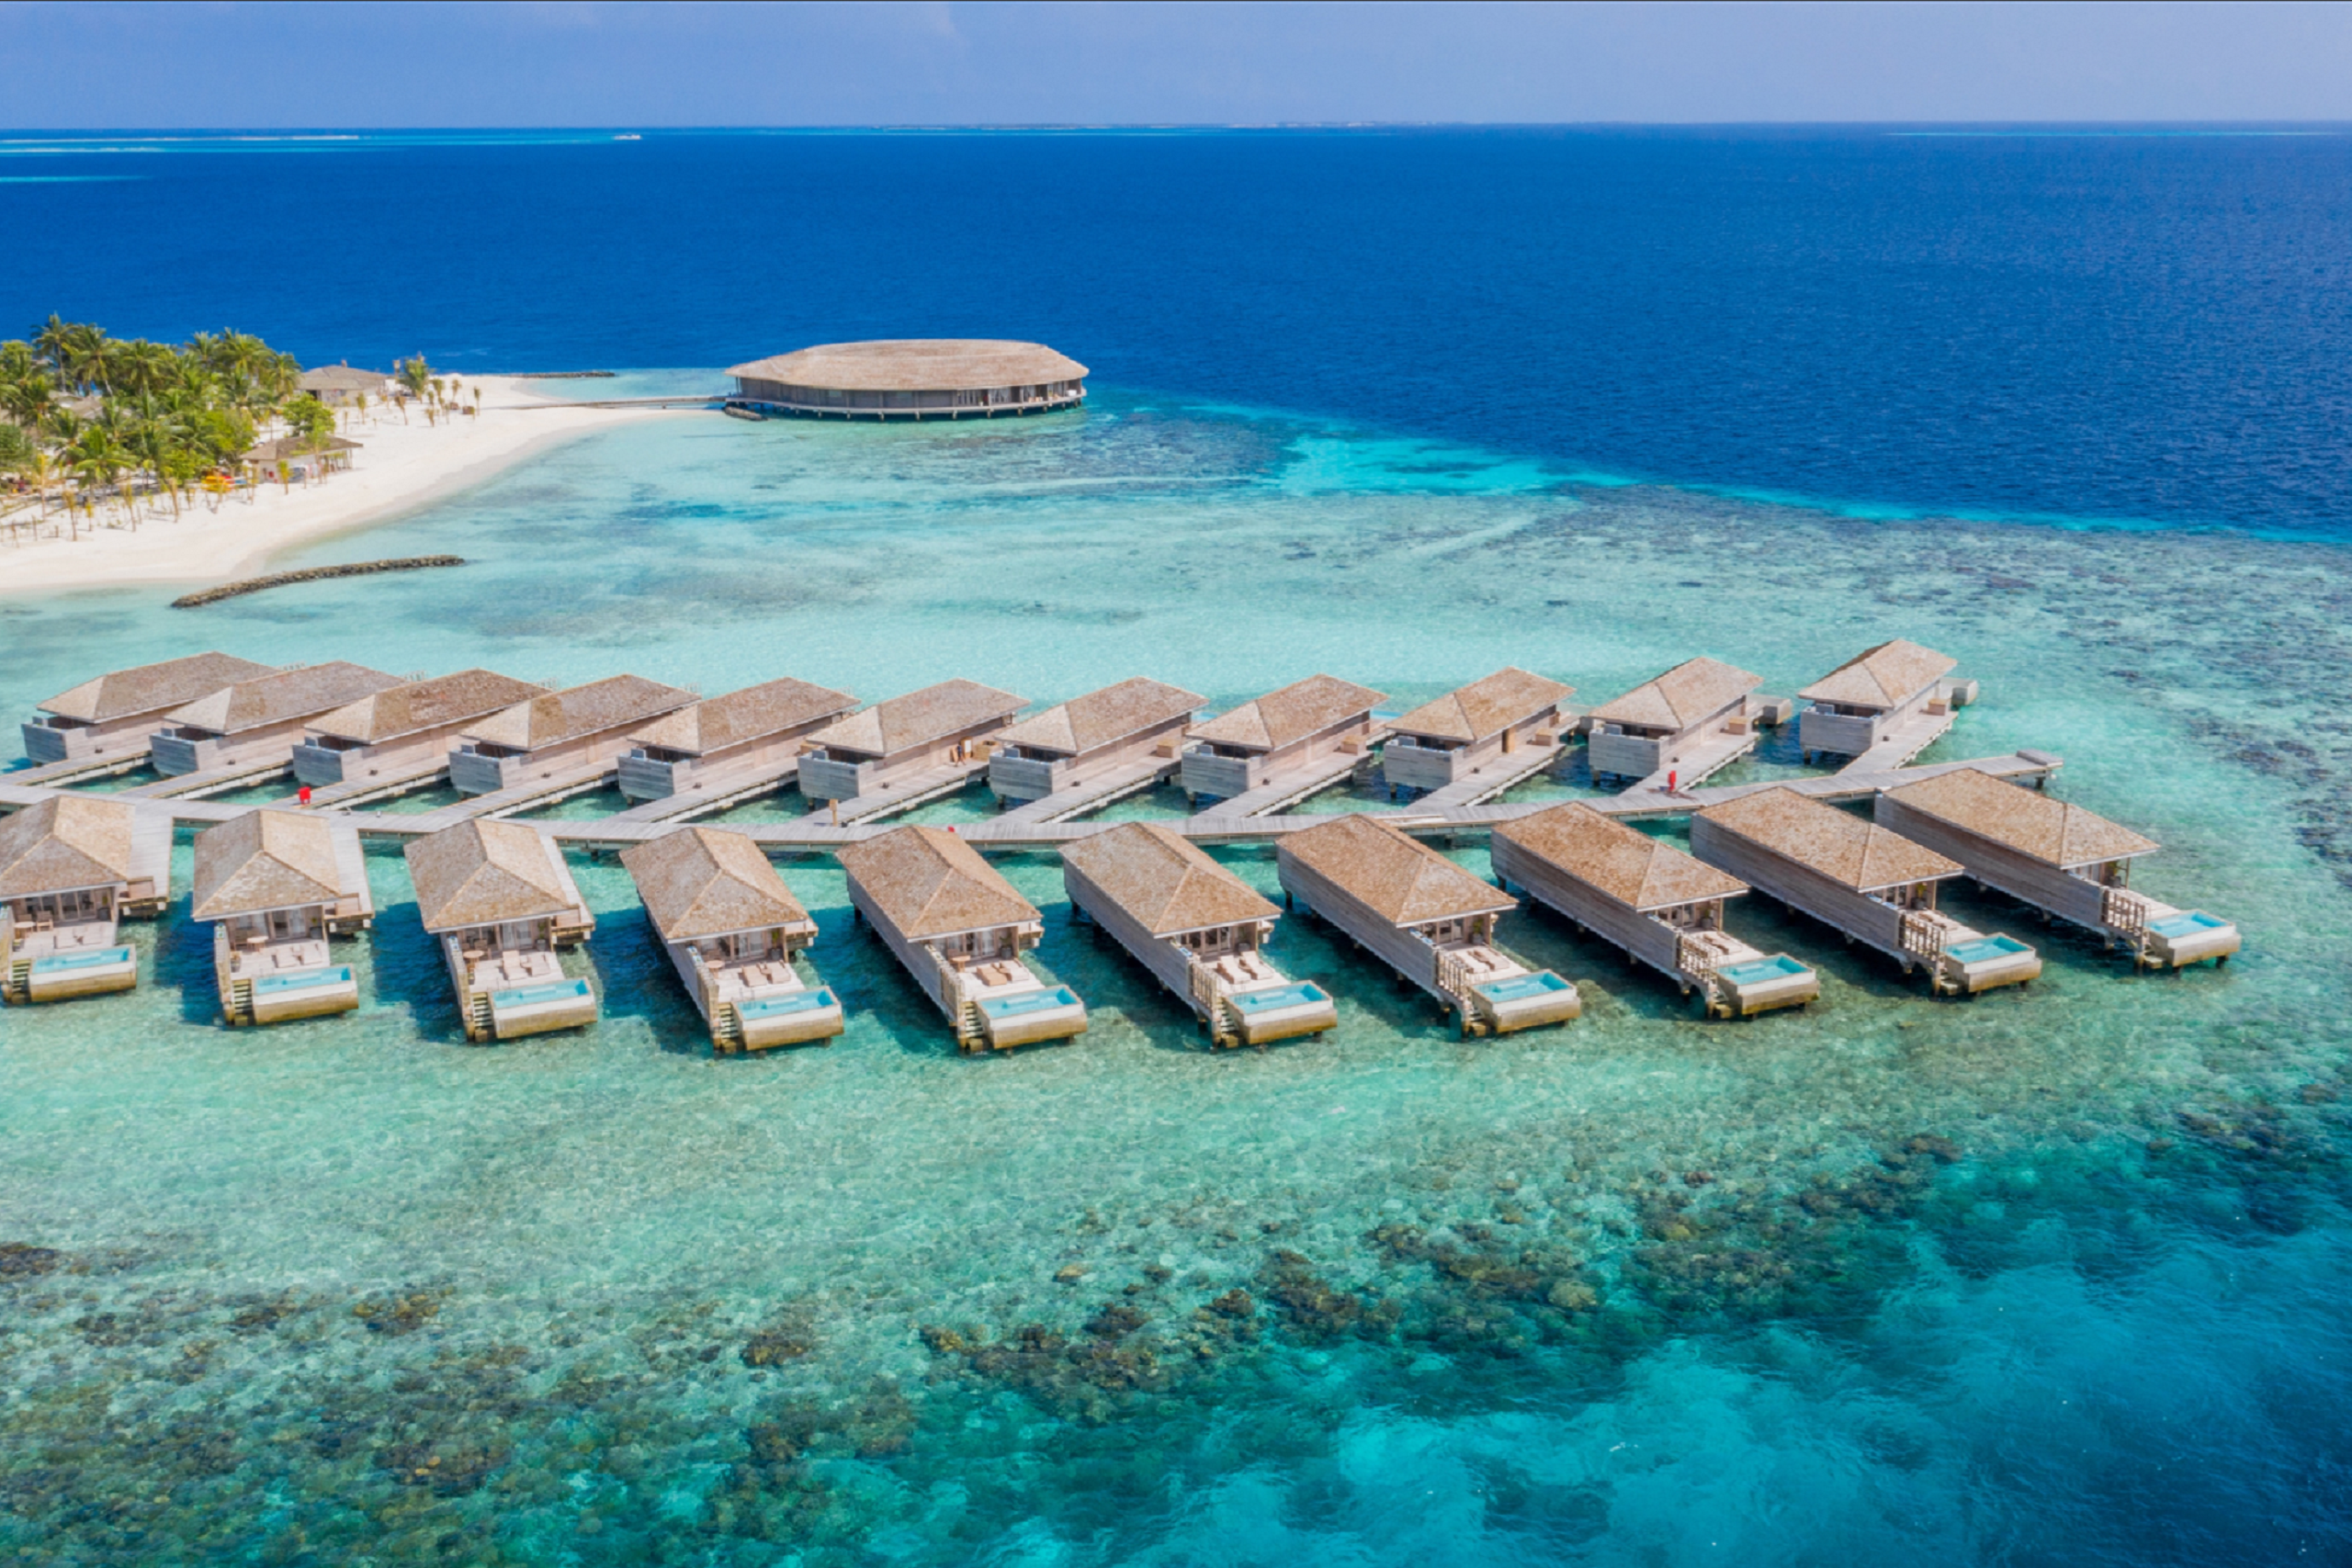 馬爾地夫卡吉度假村 Kagi Maldives Spa Island